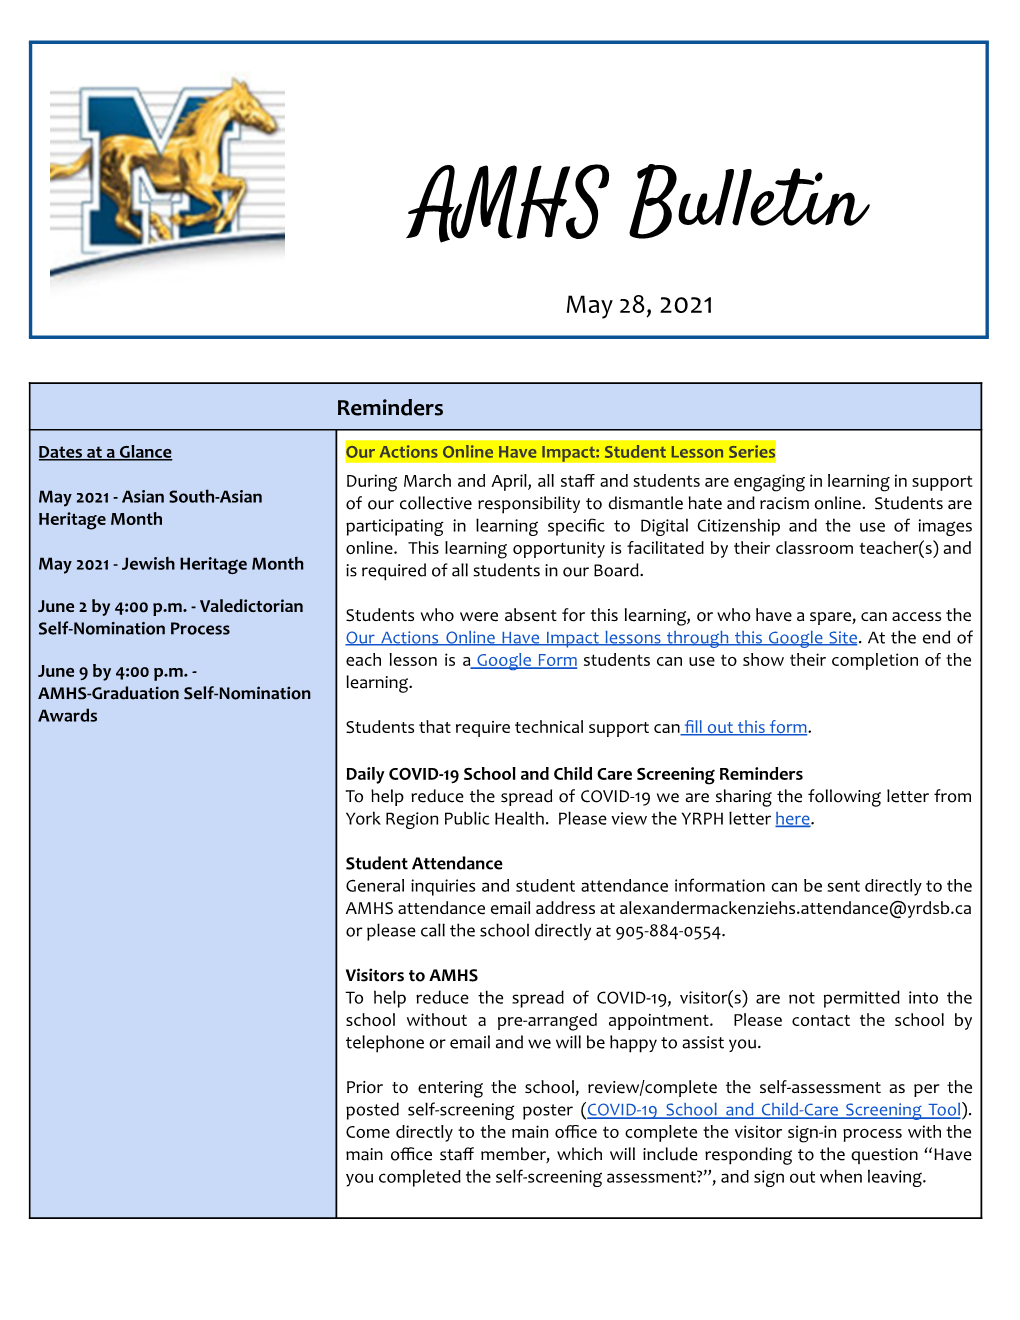 AMHS Parent Bulletin May 28, 2021